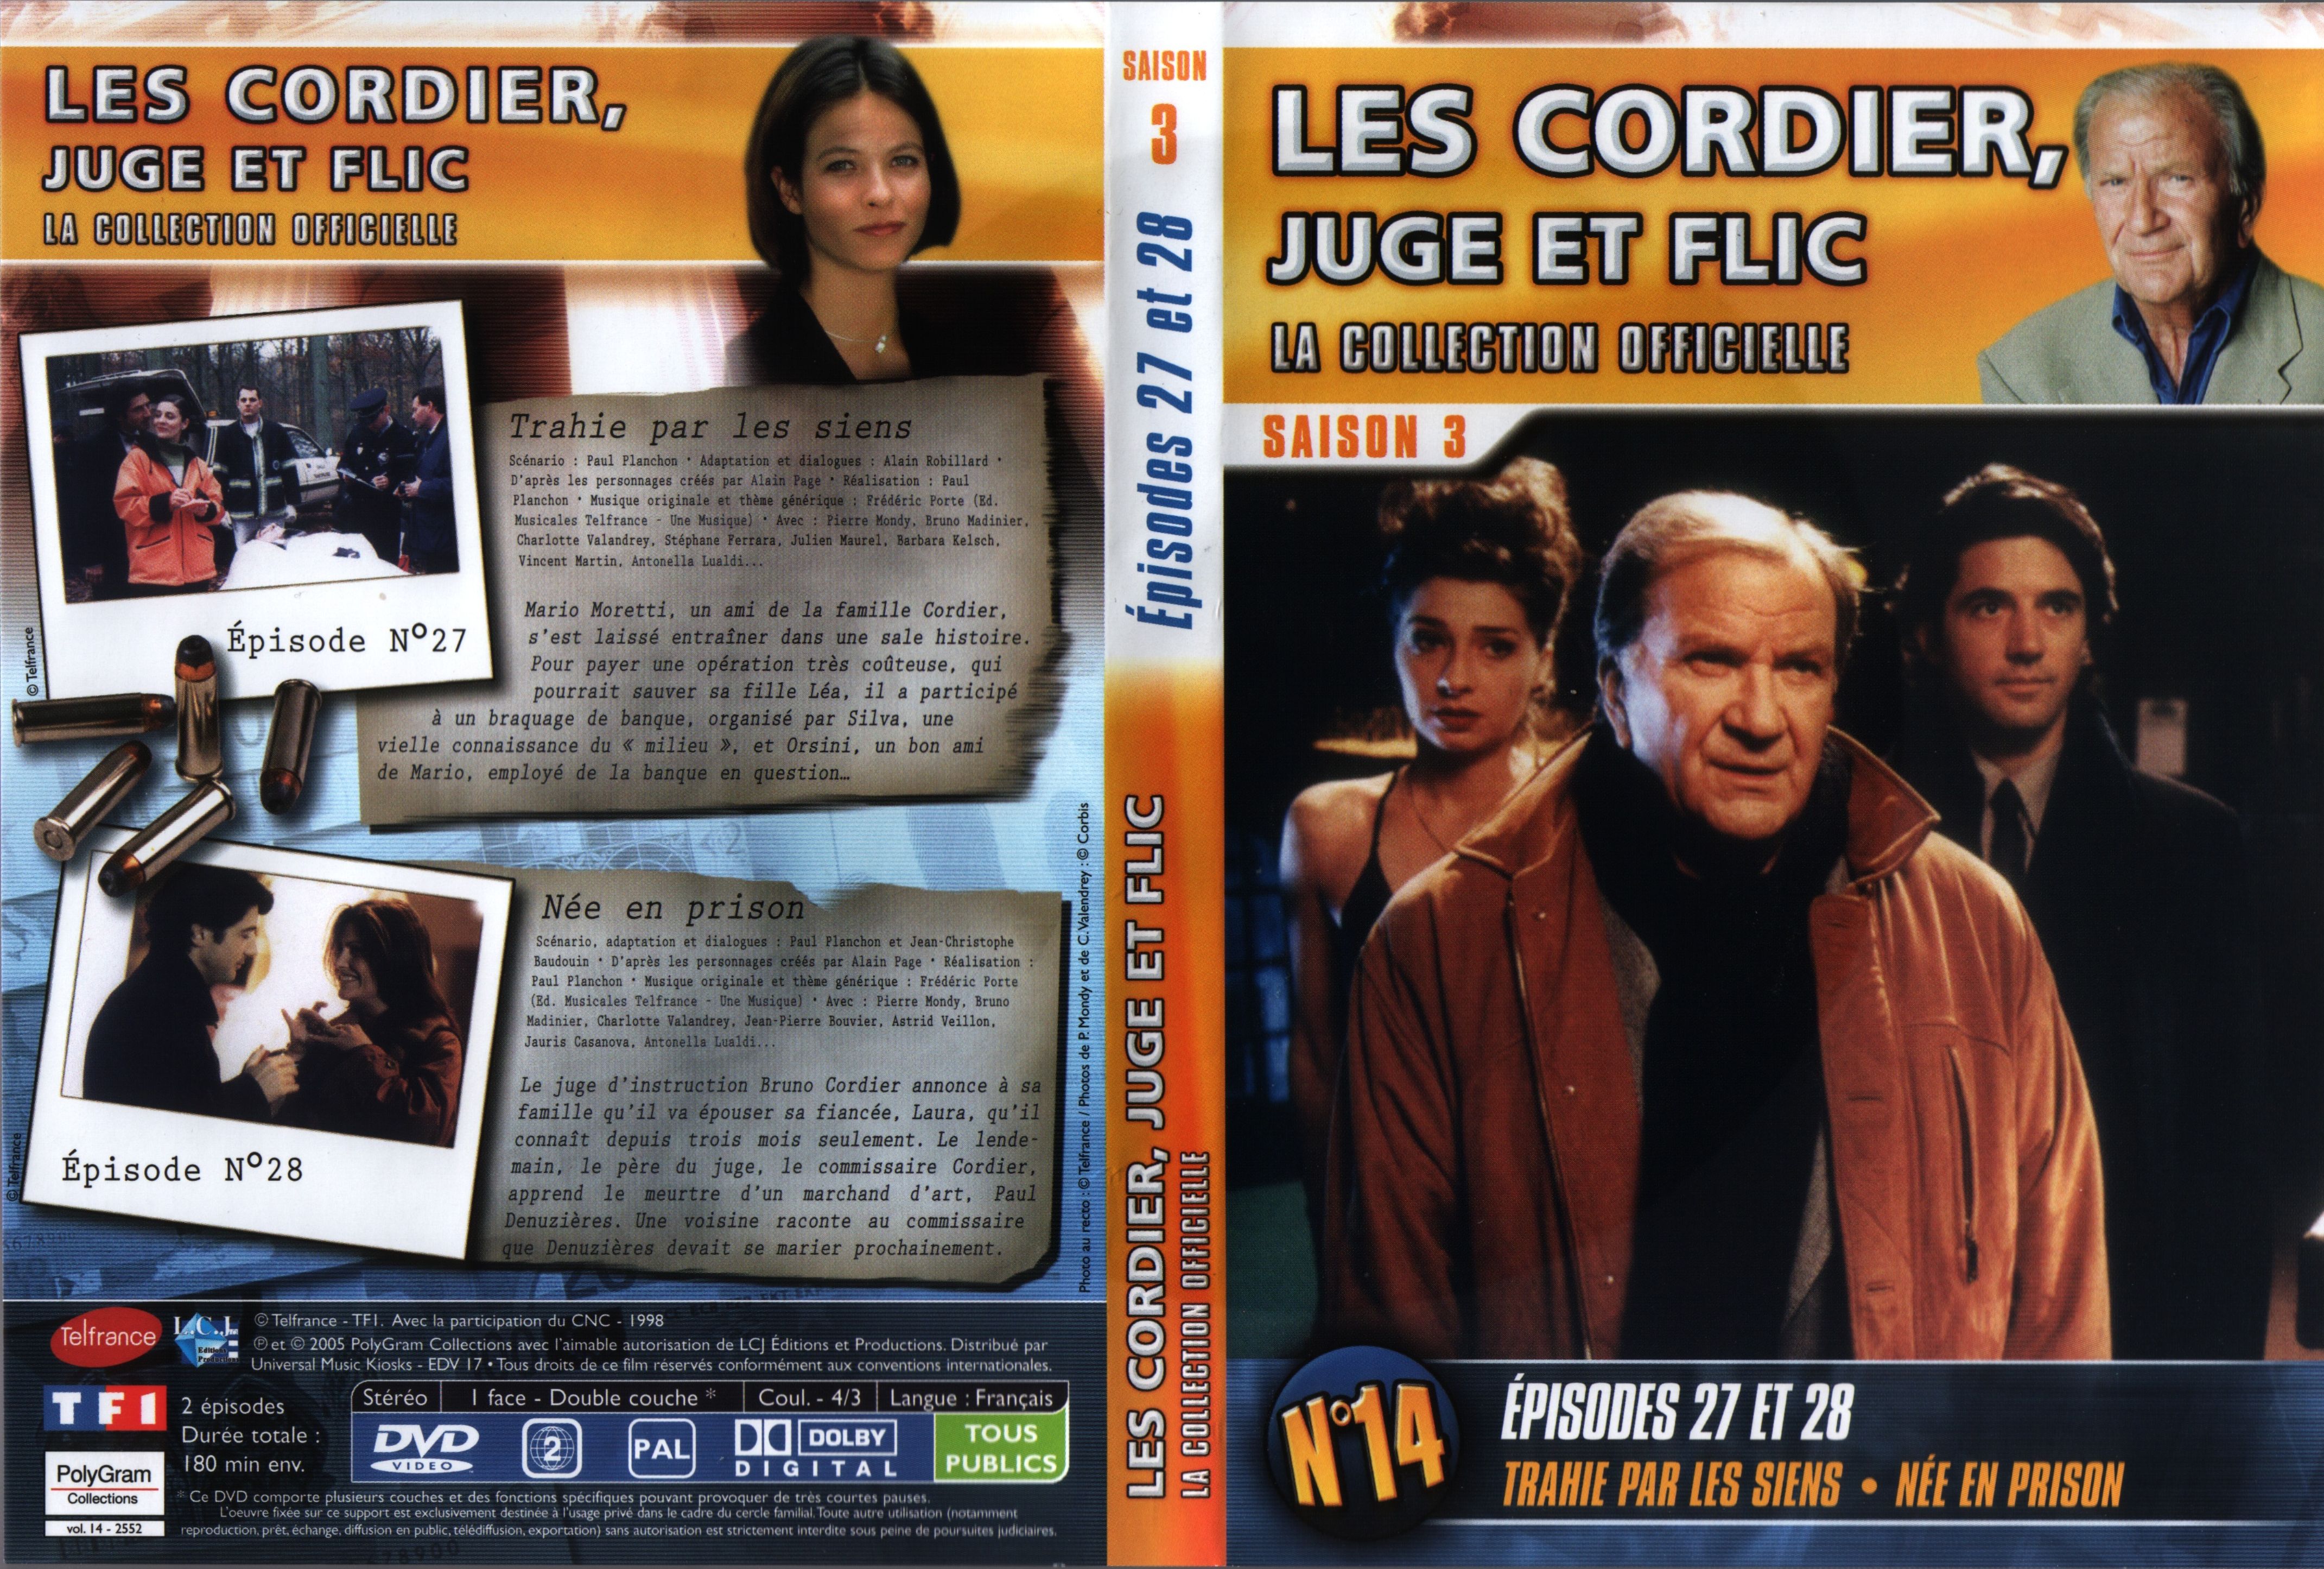 Jaquette DVD Les cordier juge et flic Saison 3 vol 14